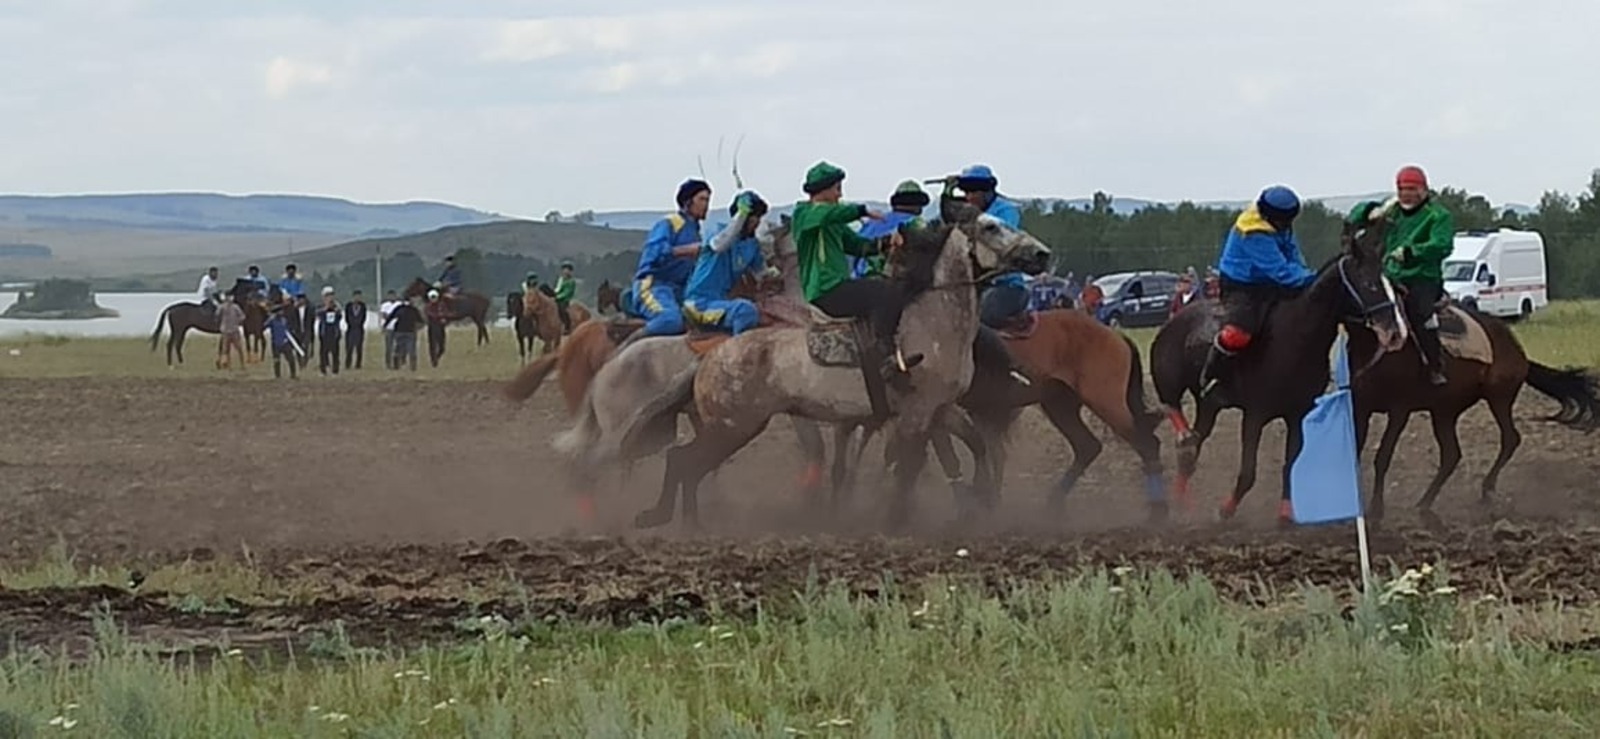 На фестивале башкирской лошади проходят финальная игра "Ылак" и скачки